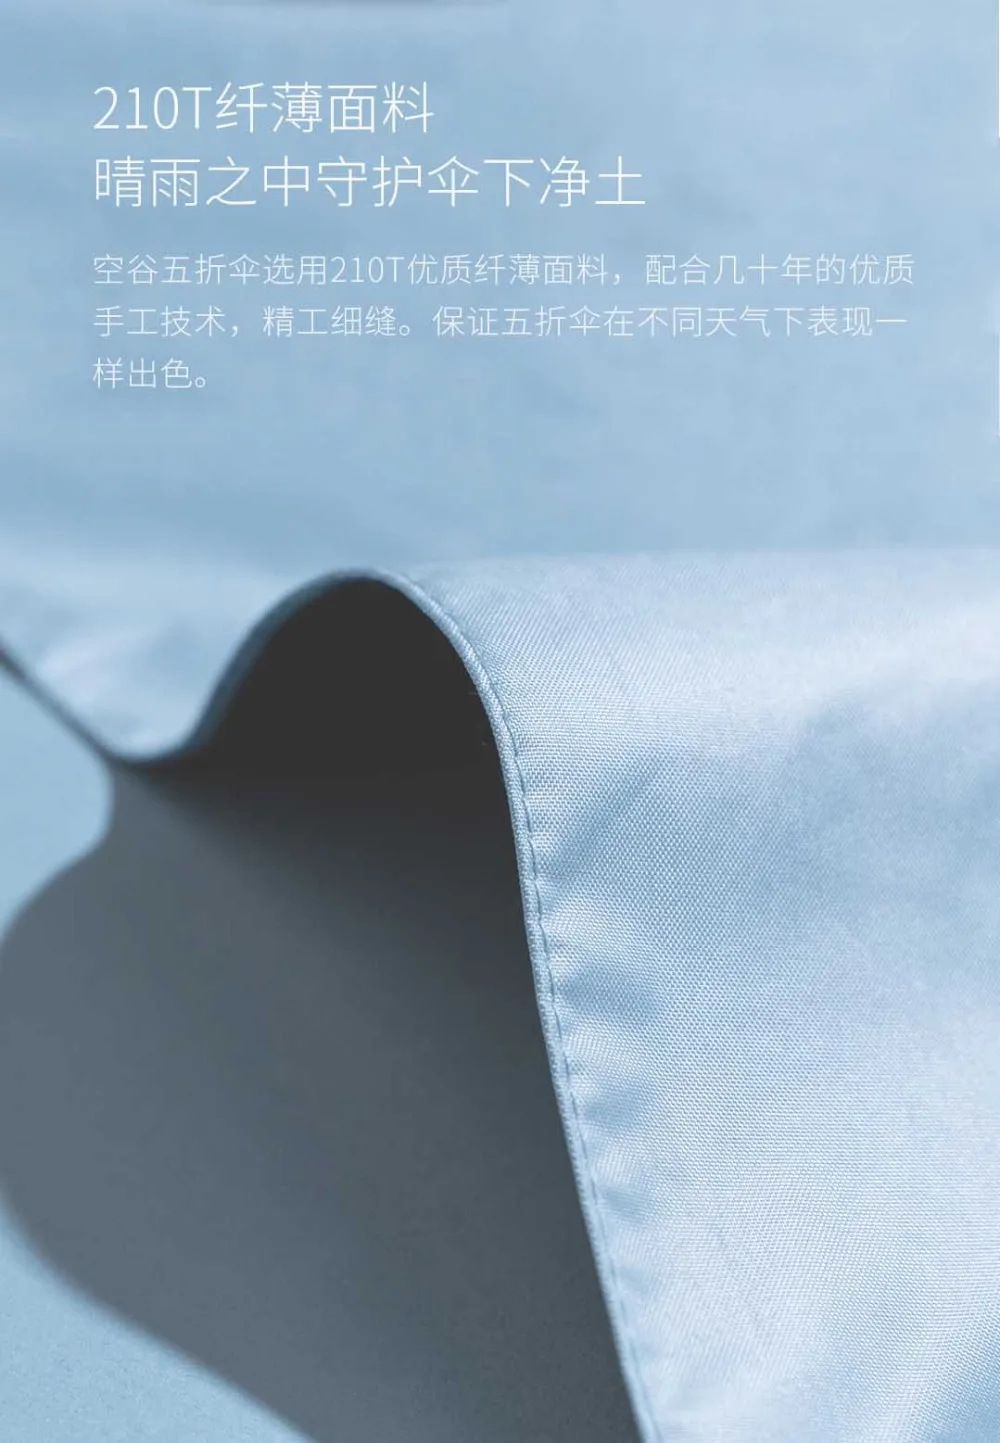 Xiaomi Youpin солнцезащитный черный пластиковый зонтик ультра-короткий черный пластиковый солнцезащитный крем 0 легкий ультра легкий вес 3 цвета